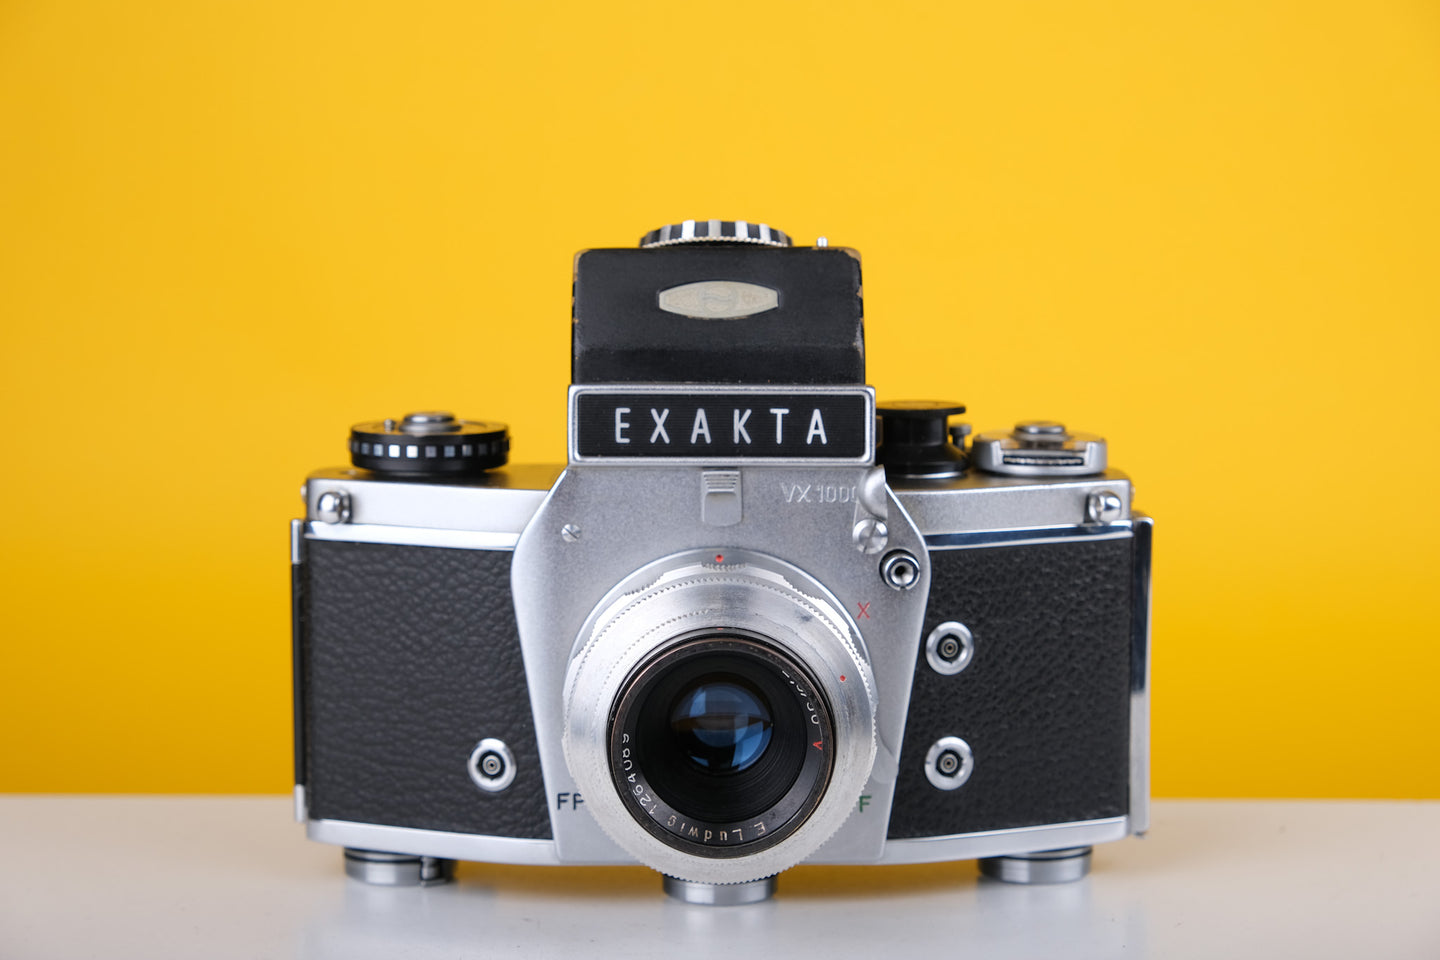 Exakta VX 1000 with 50mm f2 Lens